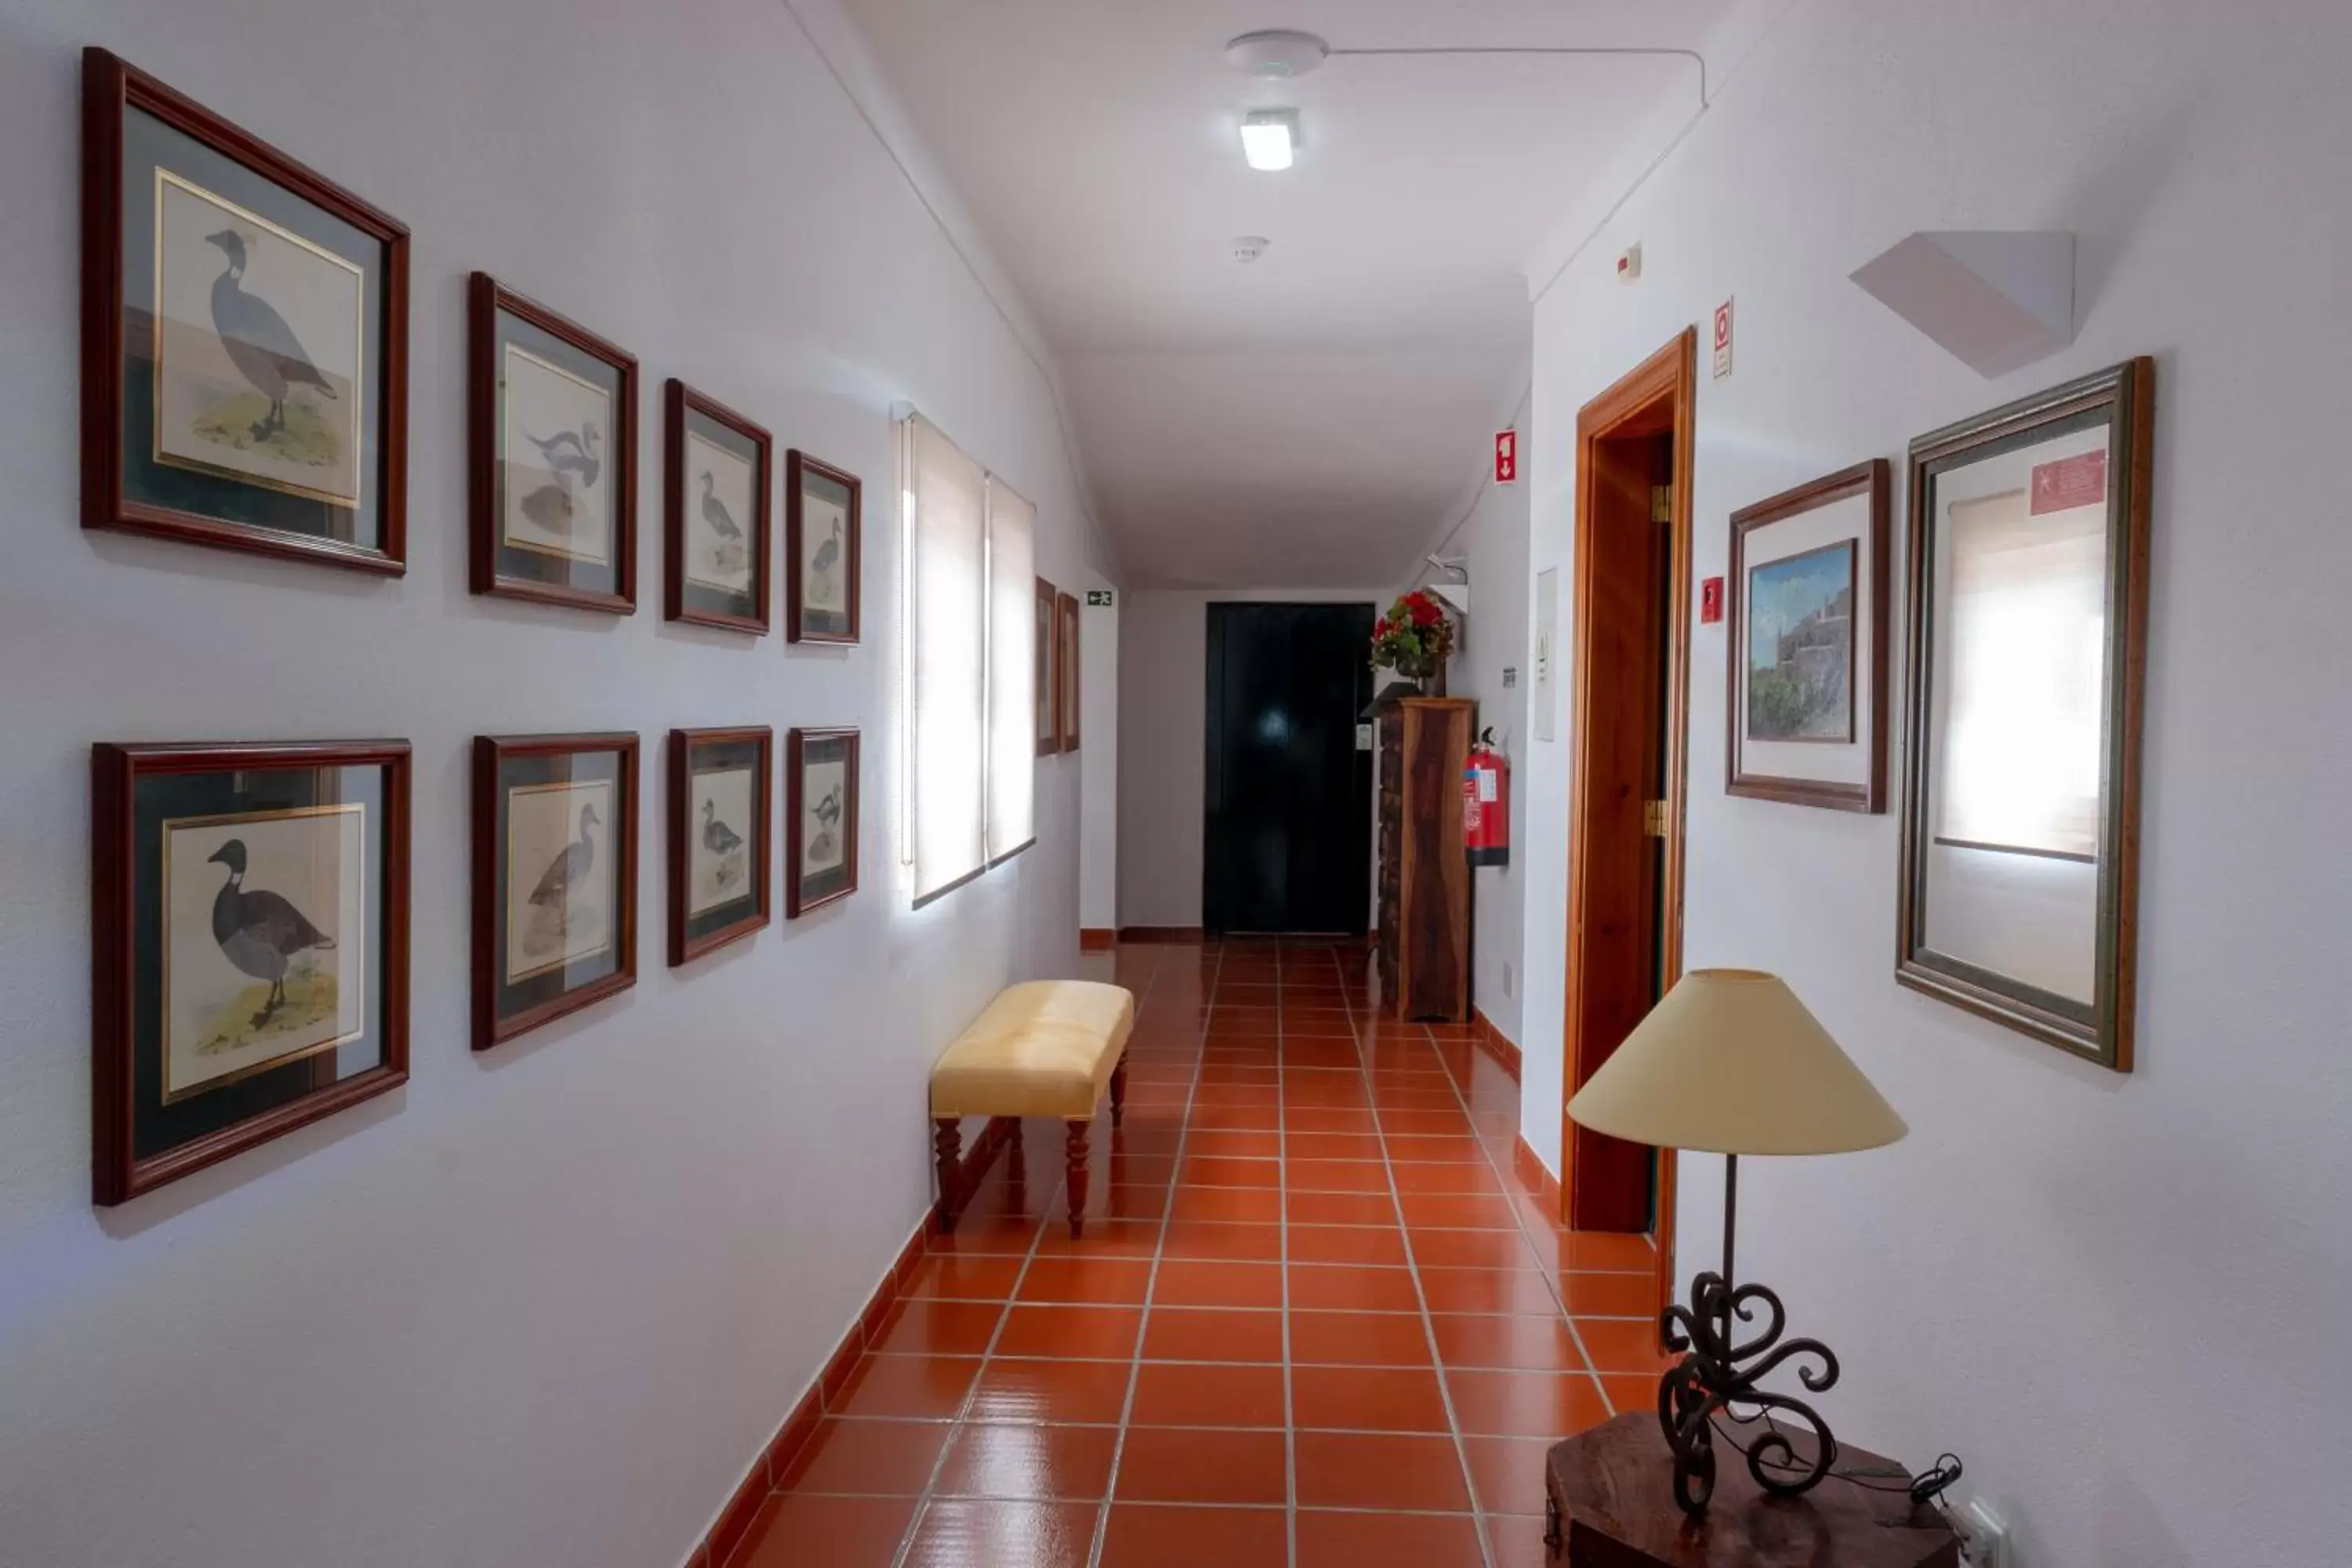 Area and facilities in El-Rei Dom Manuel Hotel